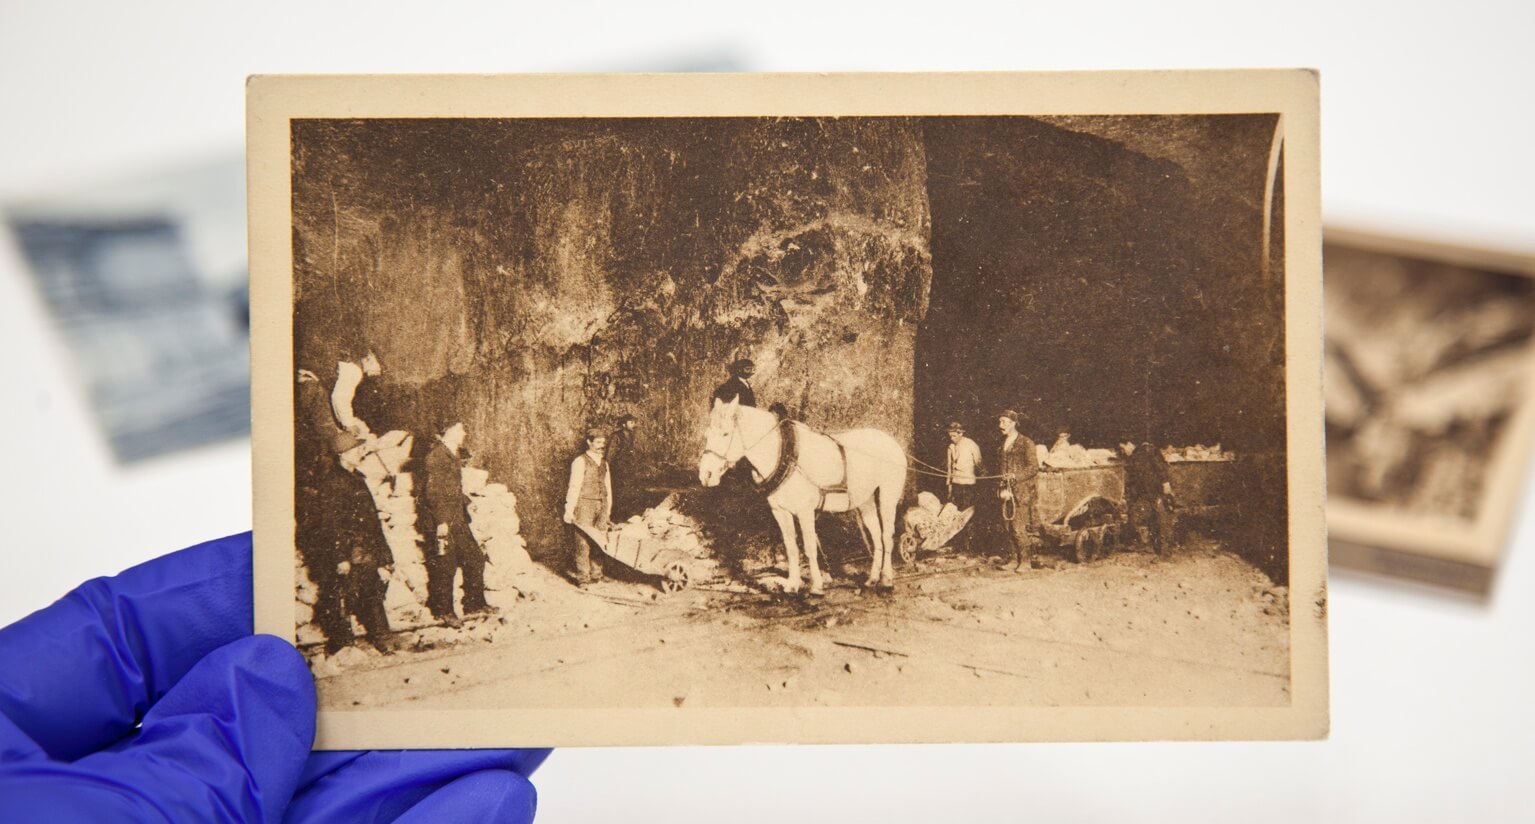 Na dłoni widoczna stare zdjęcie, przedstawiające konia ciągnącego wagoniki. Wokół widać 7 ludzi wykonujących pracę w kopalni.